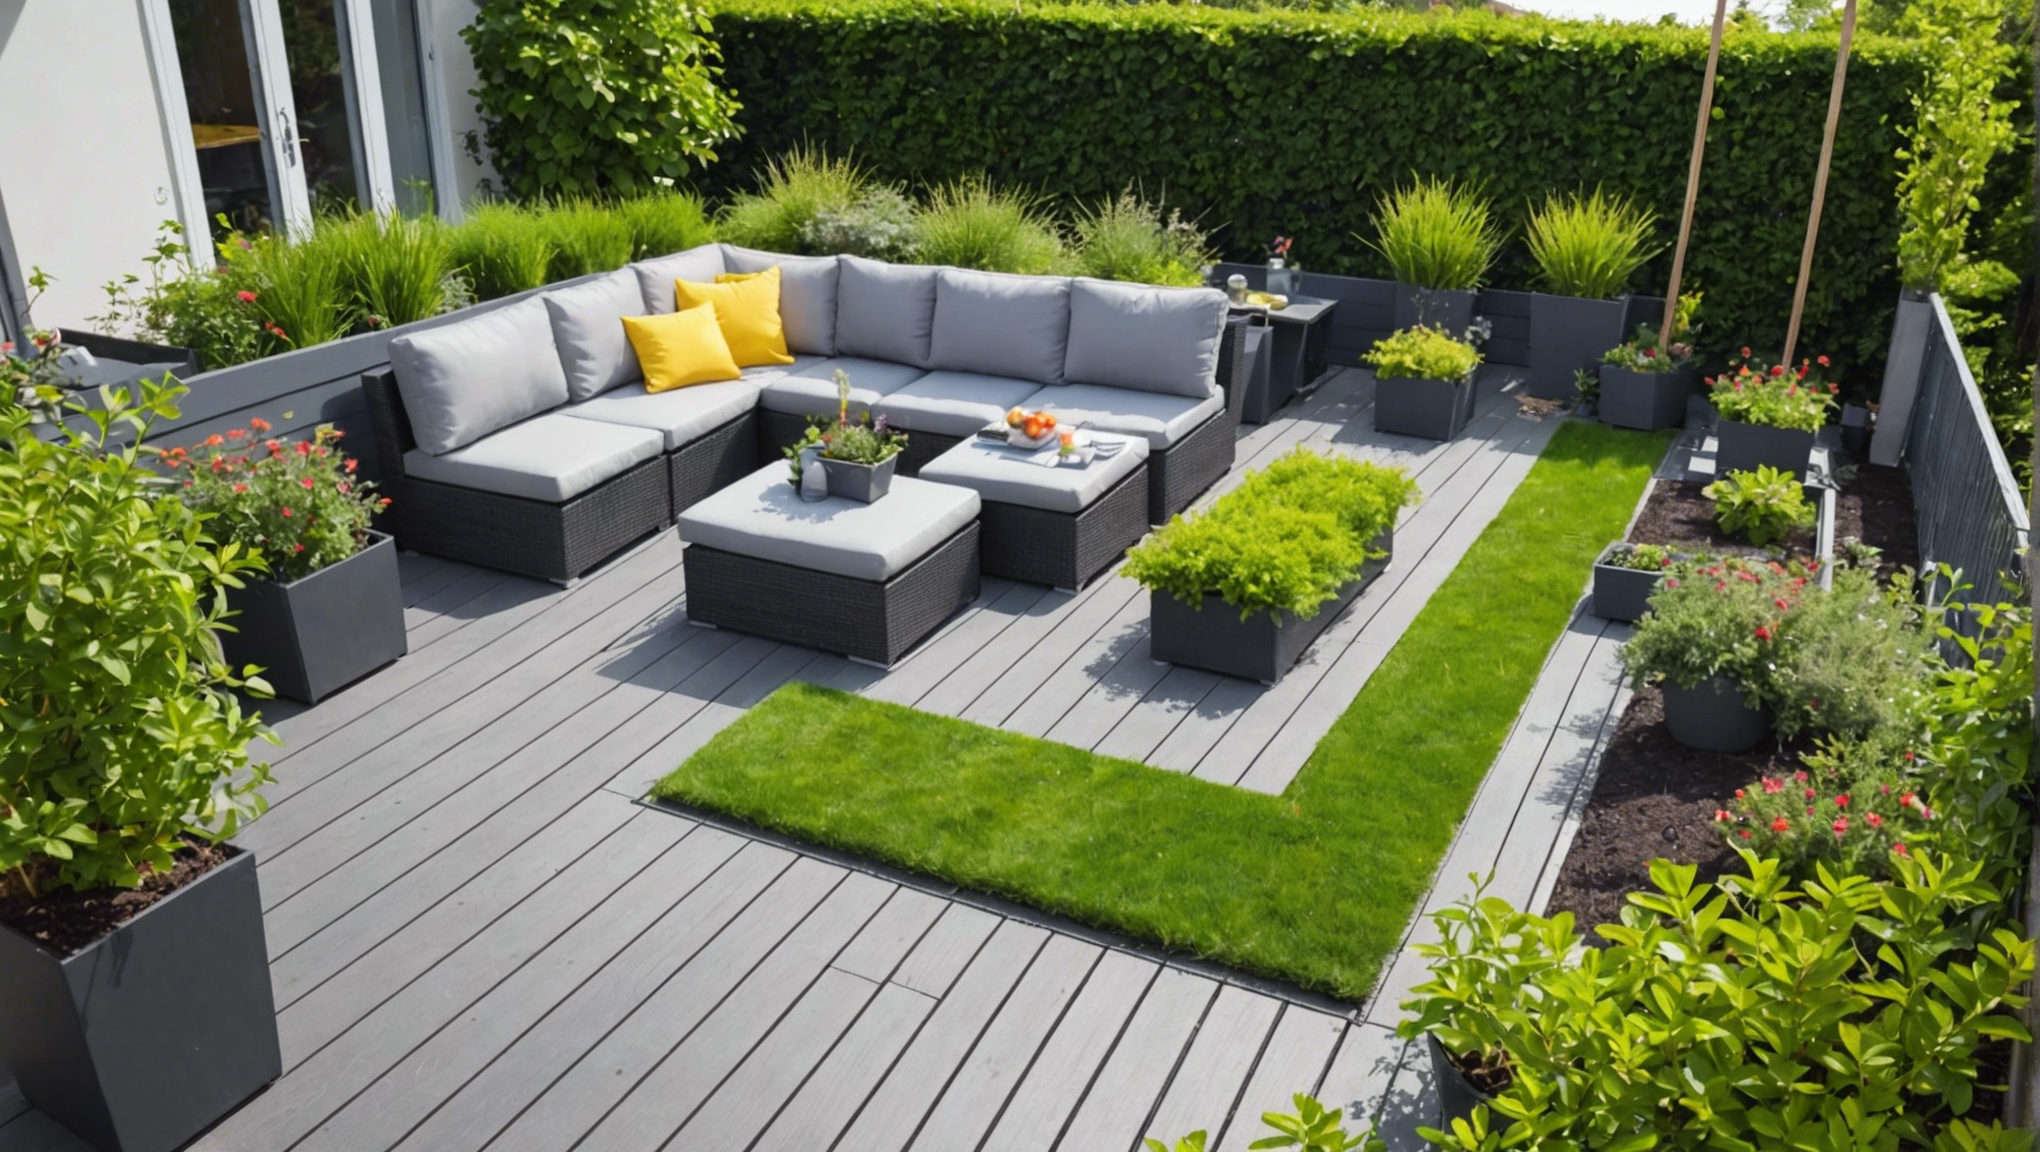 découvrez comment aménager efficacement votre terrasse pour un jardinage réussi avec nos conseils pratiques et astuces.